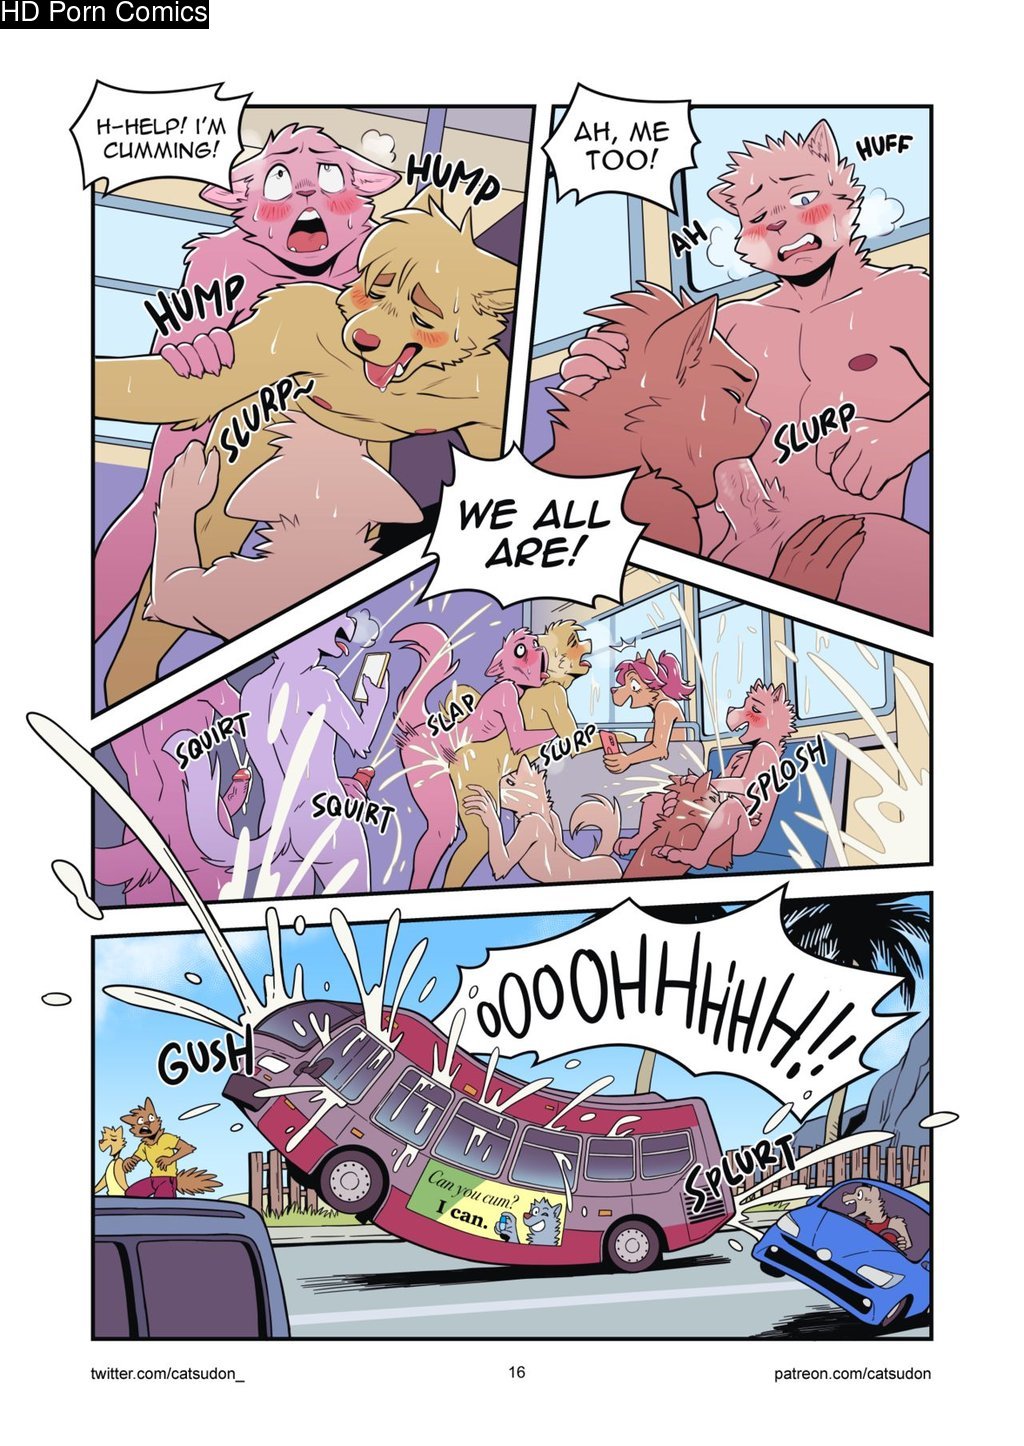 1024px x 1446px - It's A Good Day To Go To The Nude Beach 1 & 2 comic porn â€“ HD Porn Comics